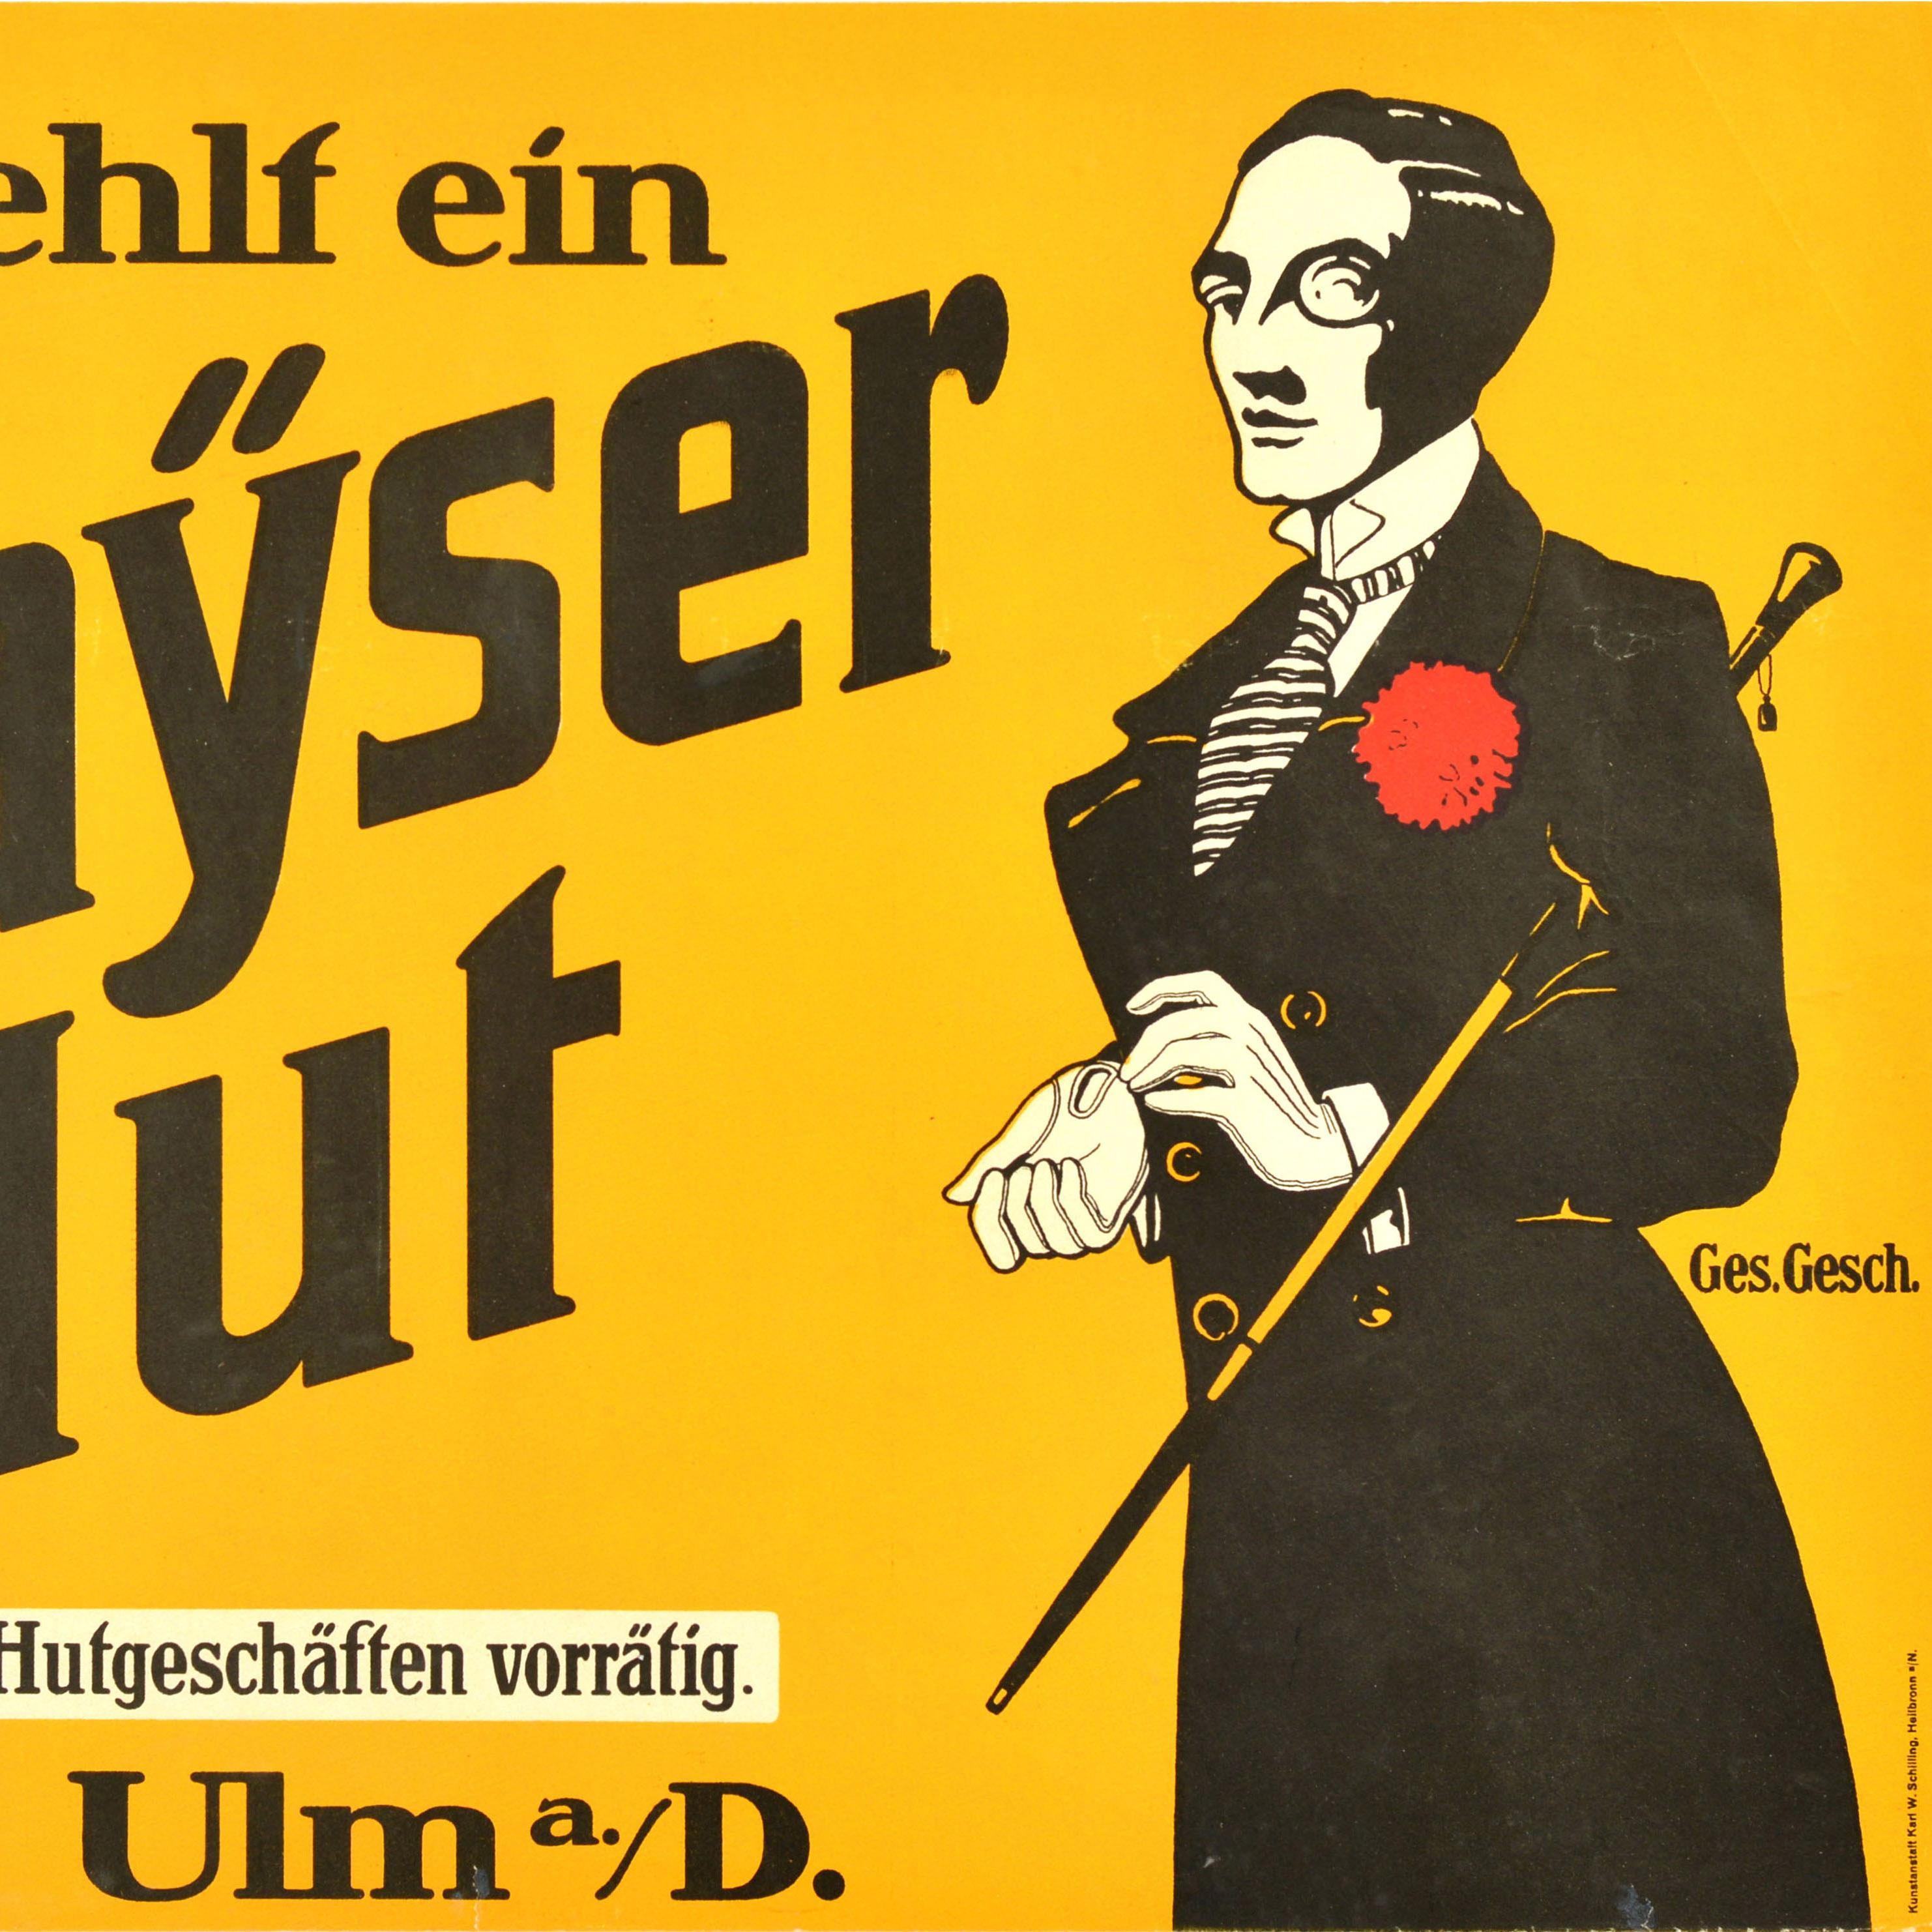 Original Antikes Werbeplakat Mayser-Hute, Modedesign, Ulm, Deutschland (Gelb), Print, von Unknown